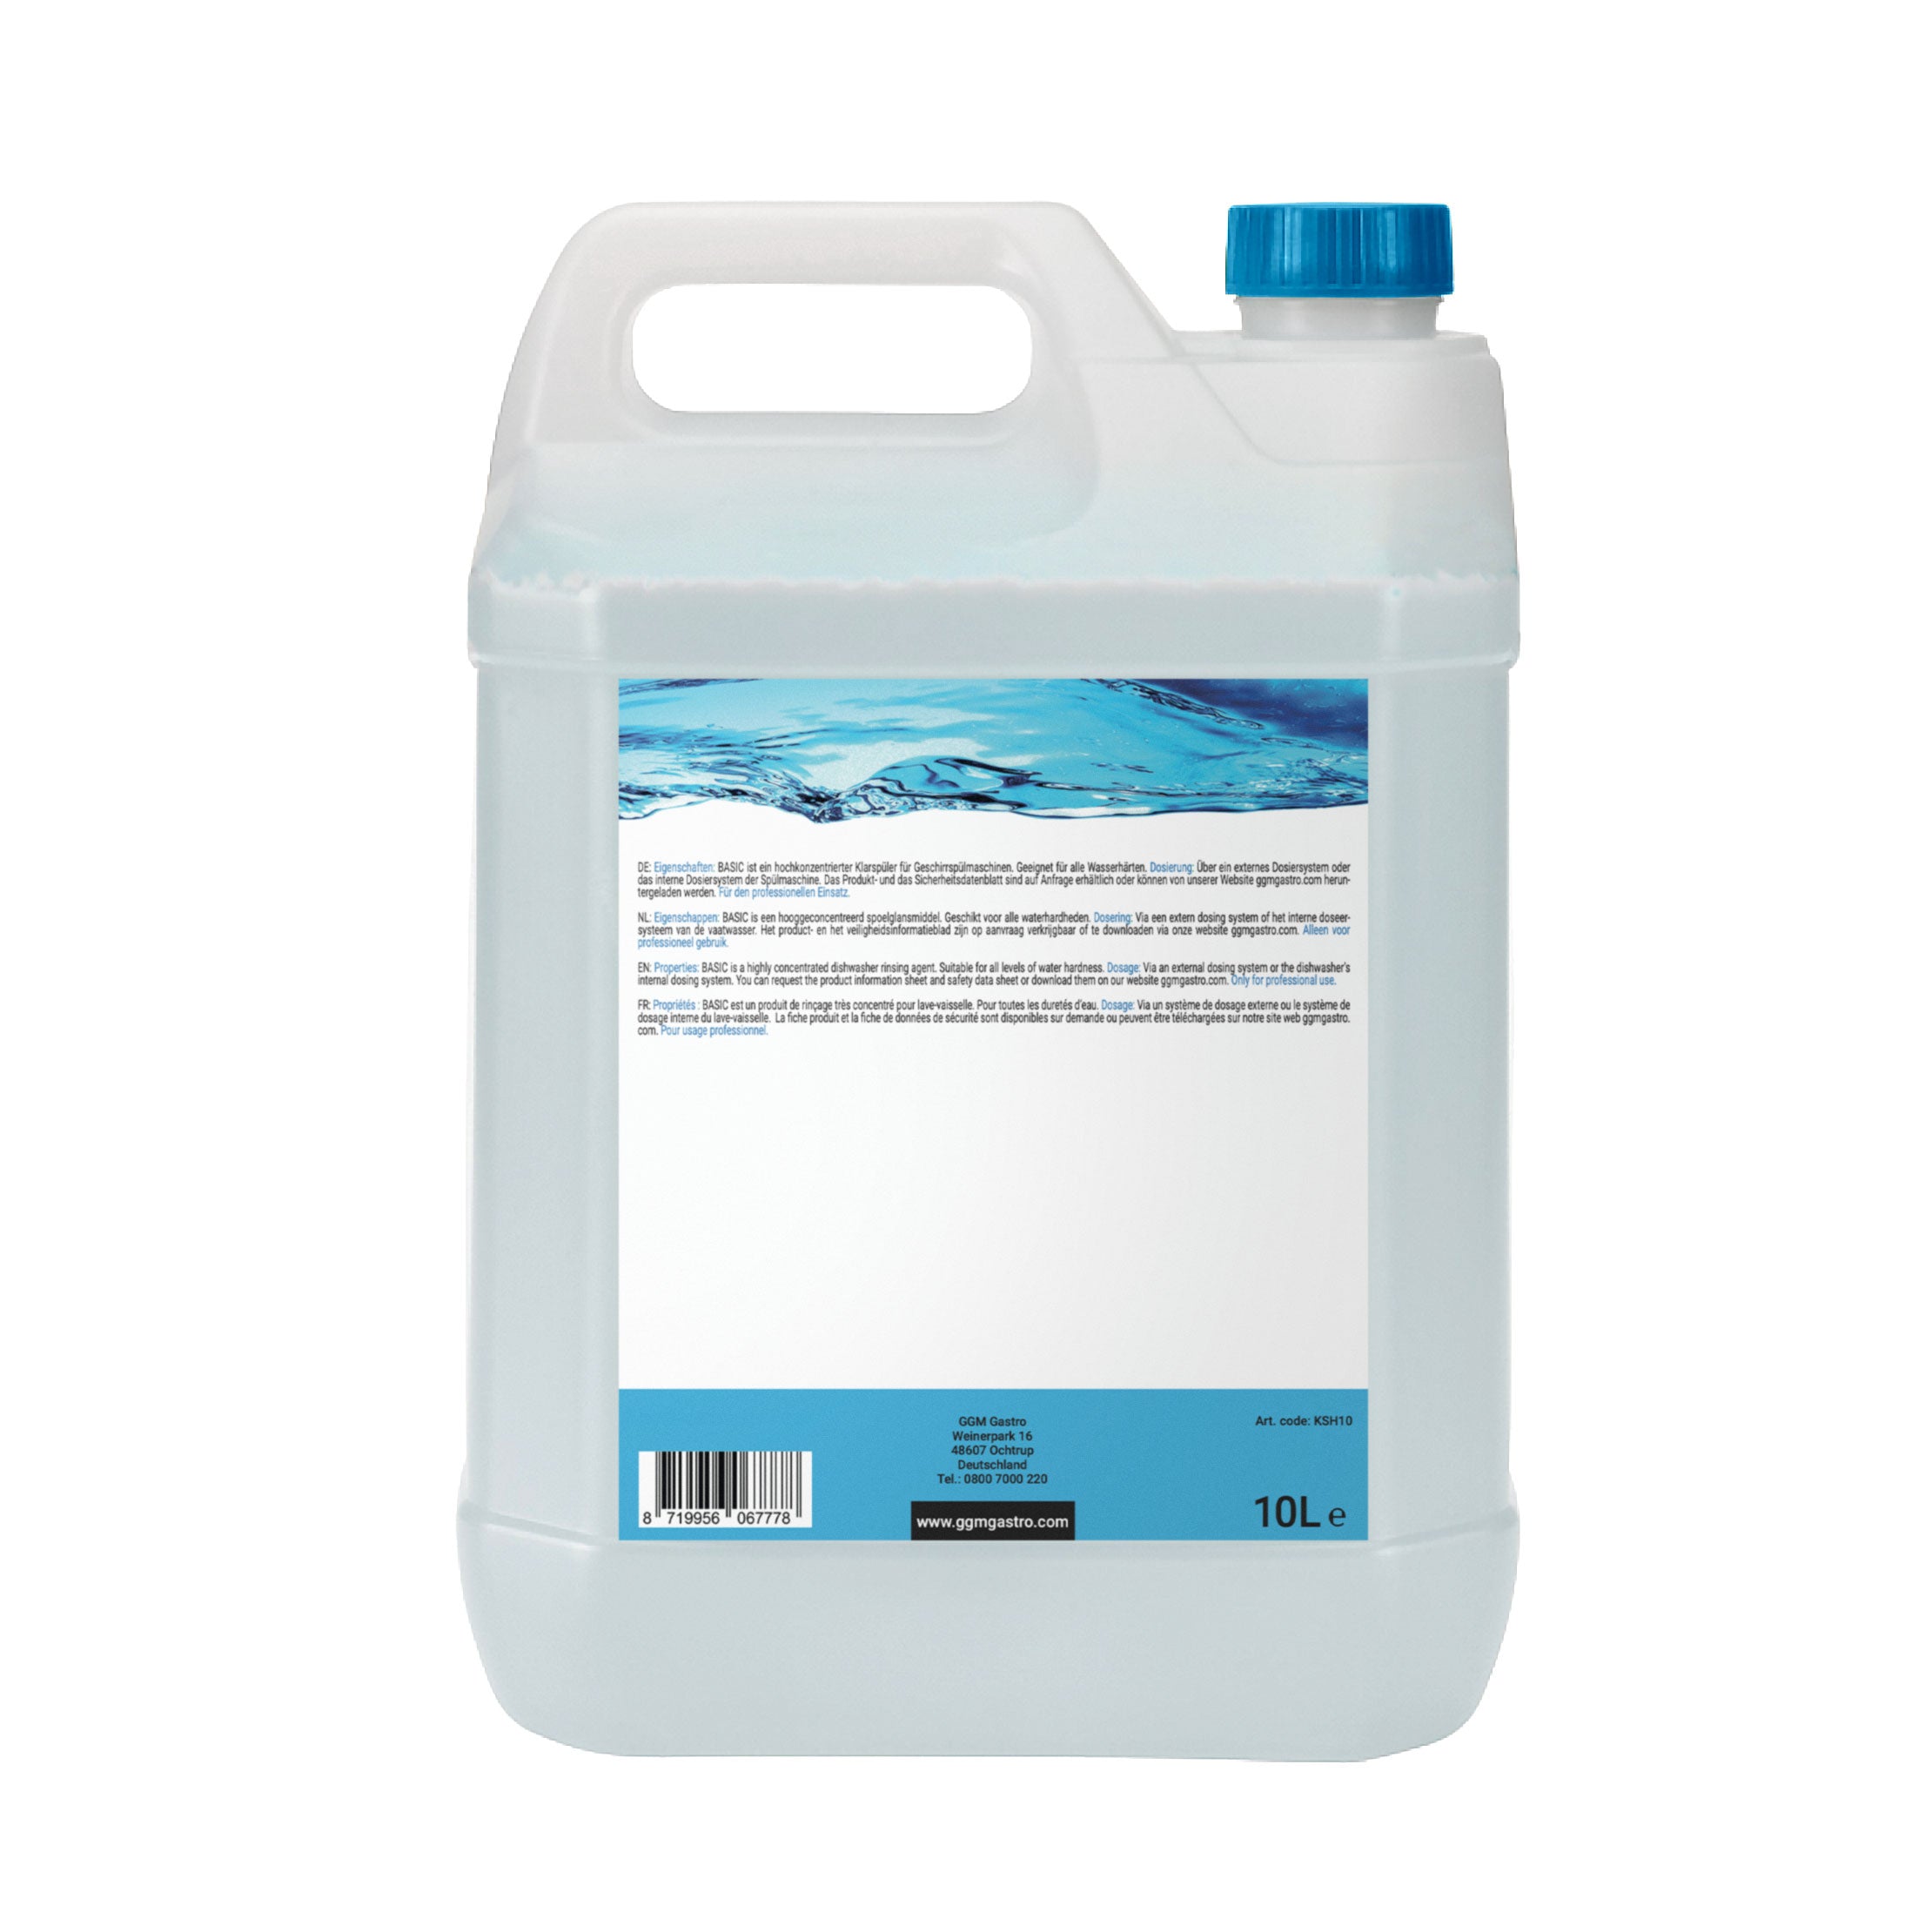 Skyllemiddel - 10 liter - Økologisk/miljøvennlig